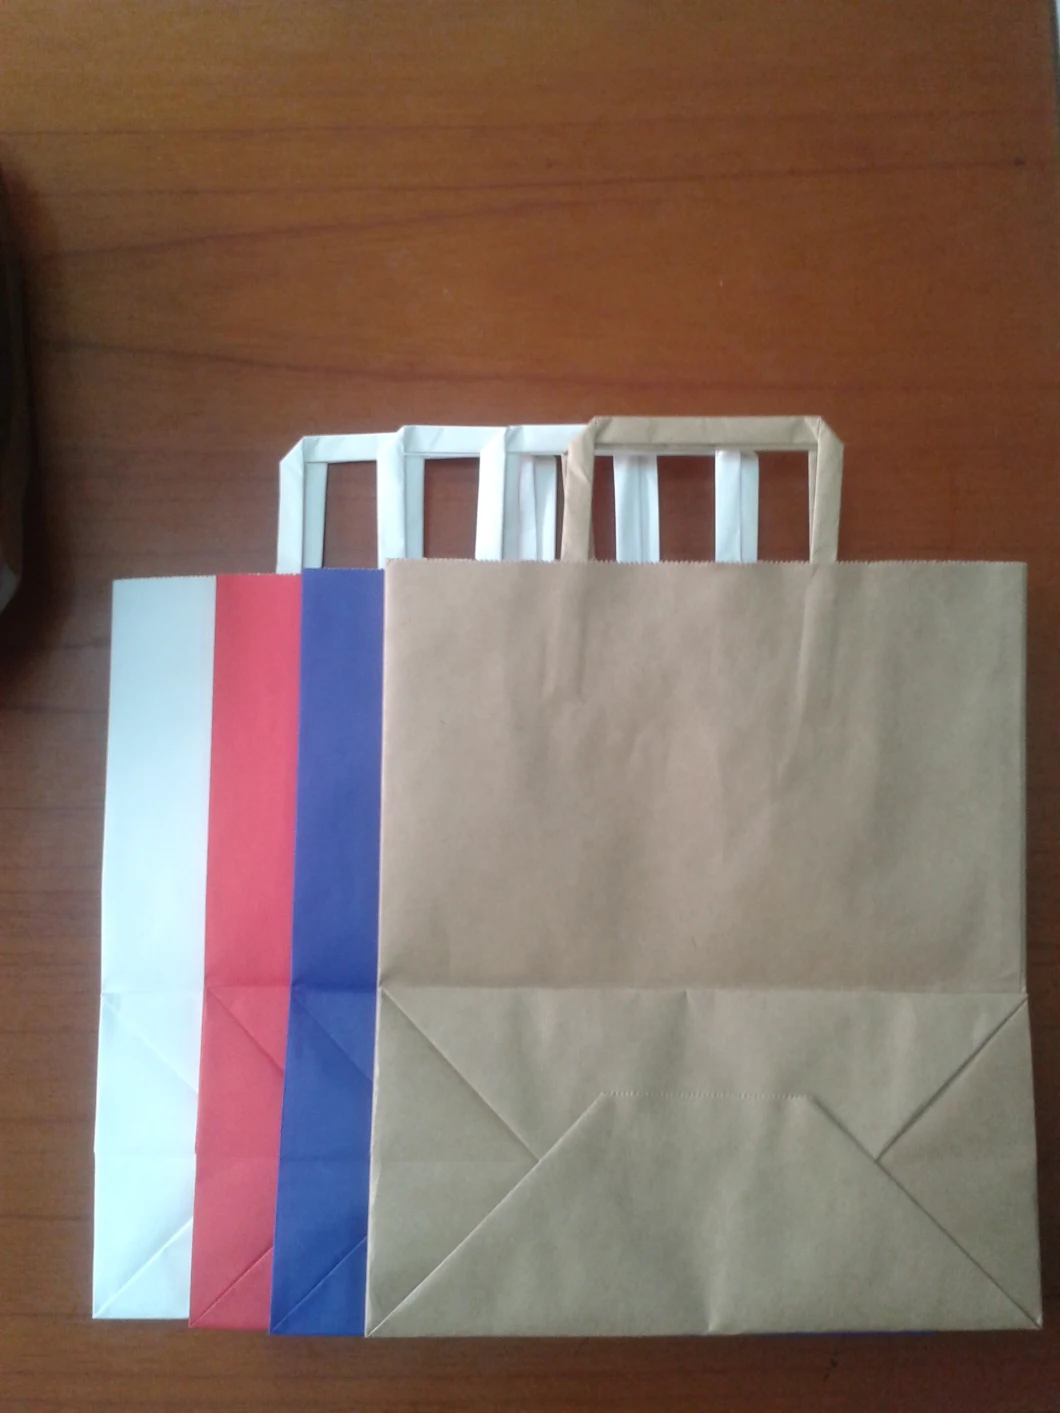 Flat Paper Bag Brown Paper Bag Custom Paper Bag with Handle